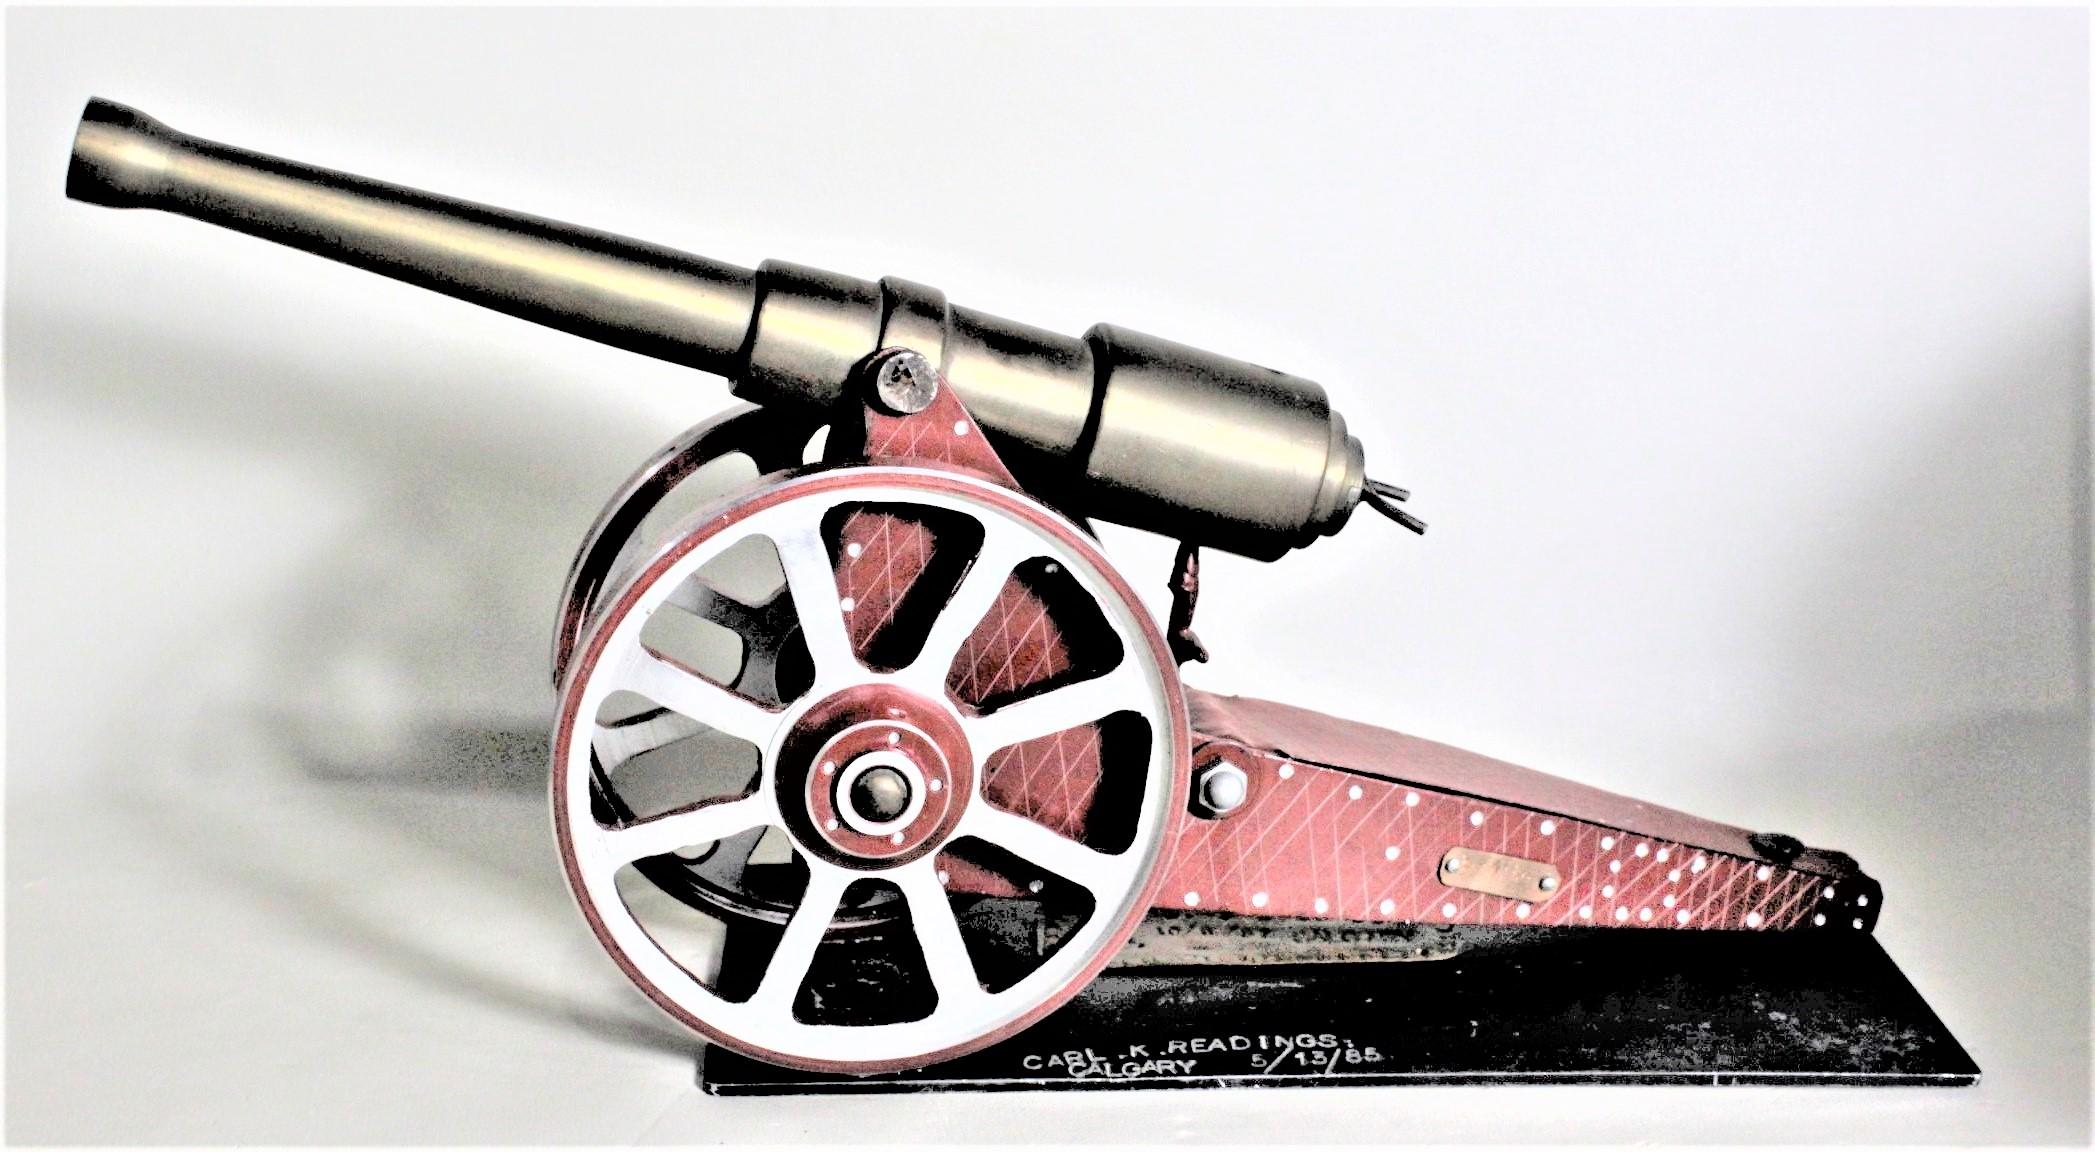 Ce modèle de canon de style Folk Art a été fabriqué au Canada par un mécanicien retraité en 1984 dans le style colonial britannique. Ce modèle de canon ressemble vaguement au canon d'artillerie de campagne britannique connu sous le nom de 